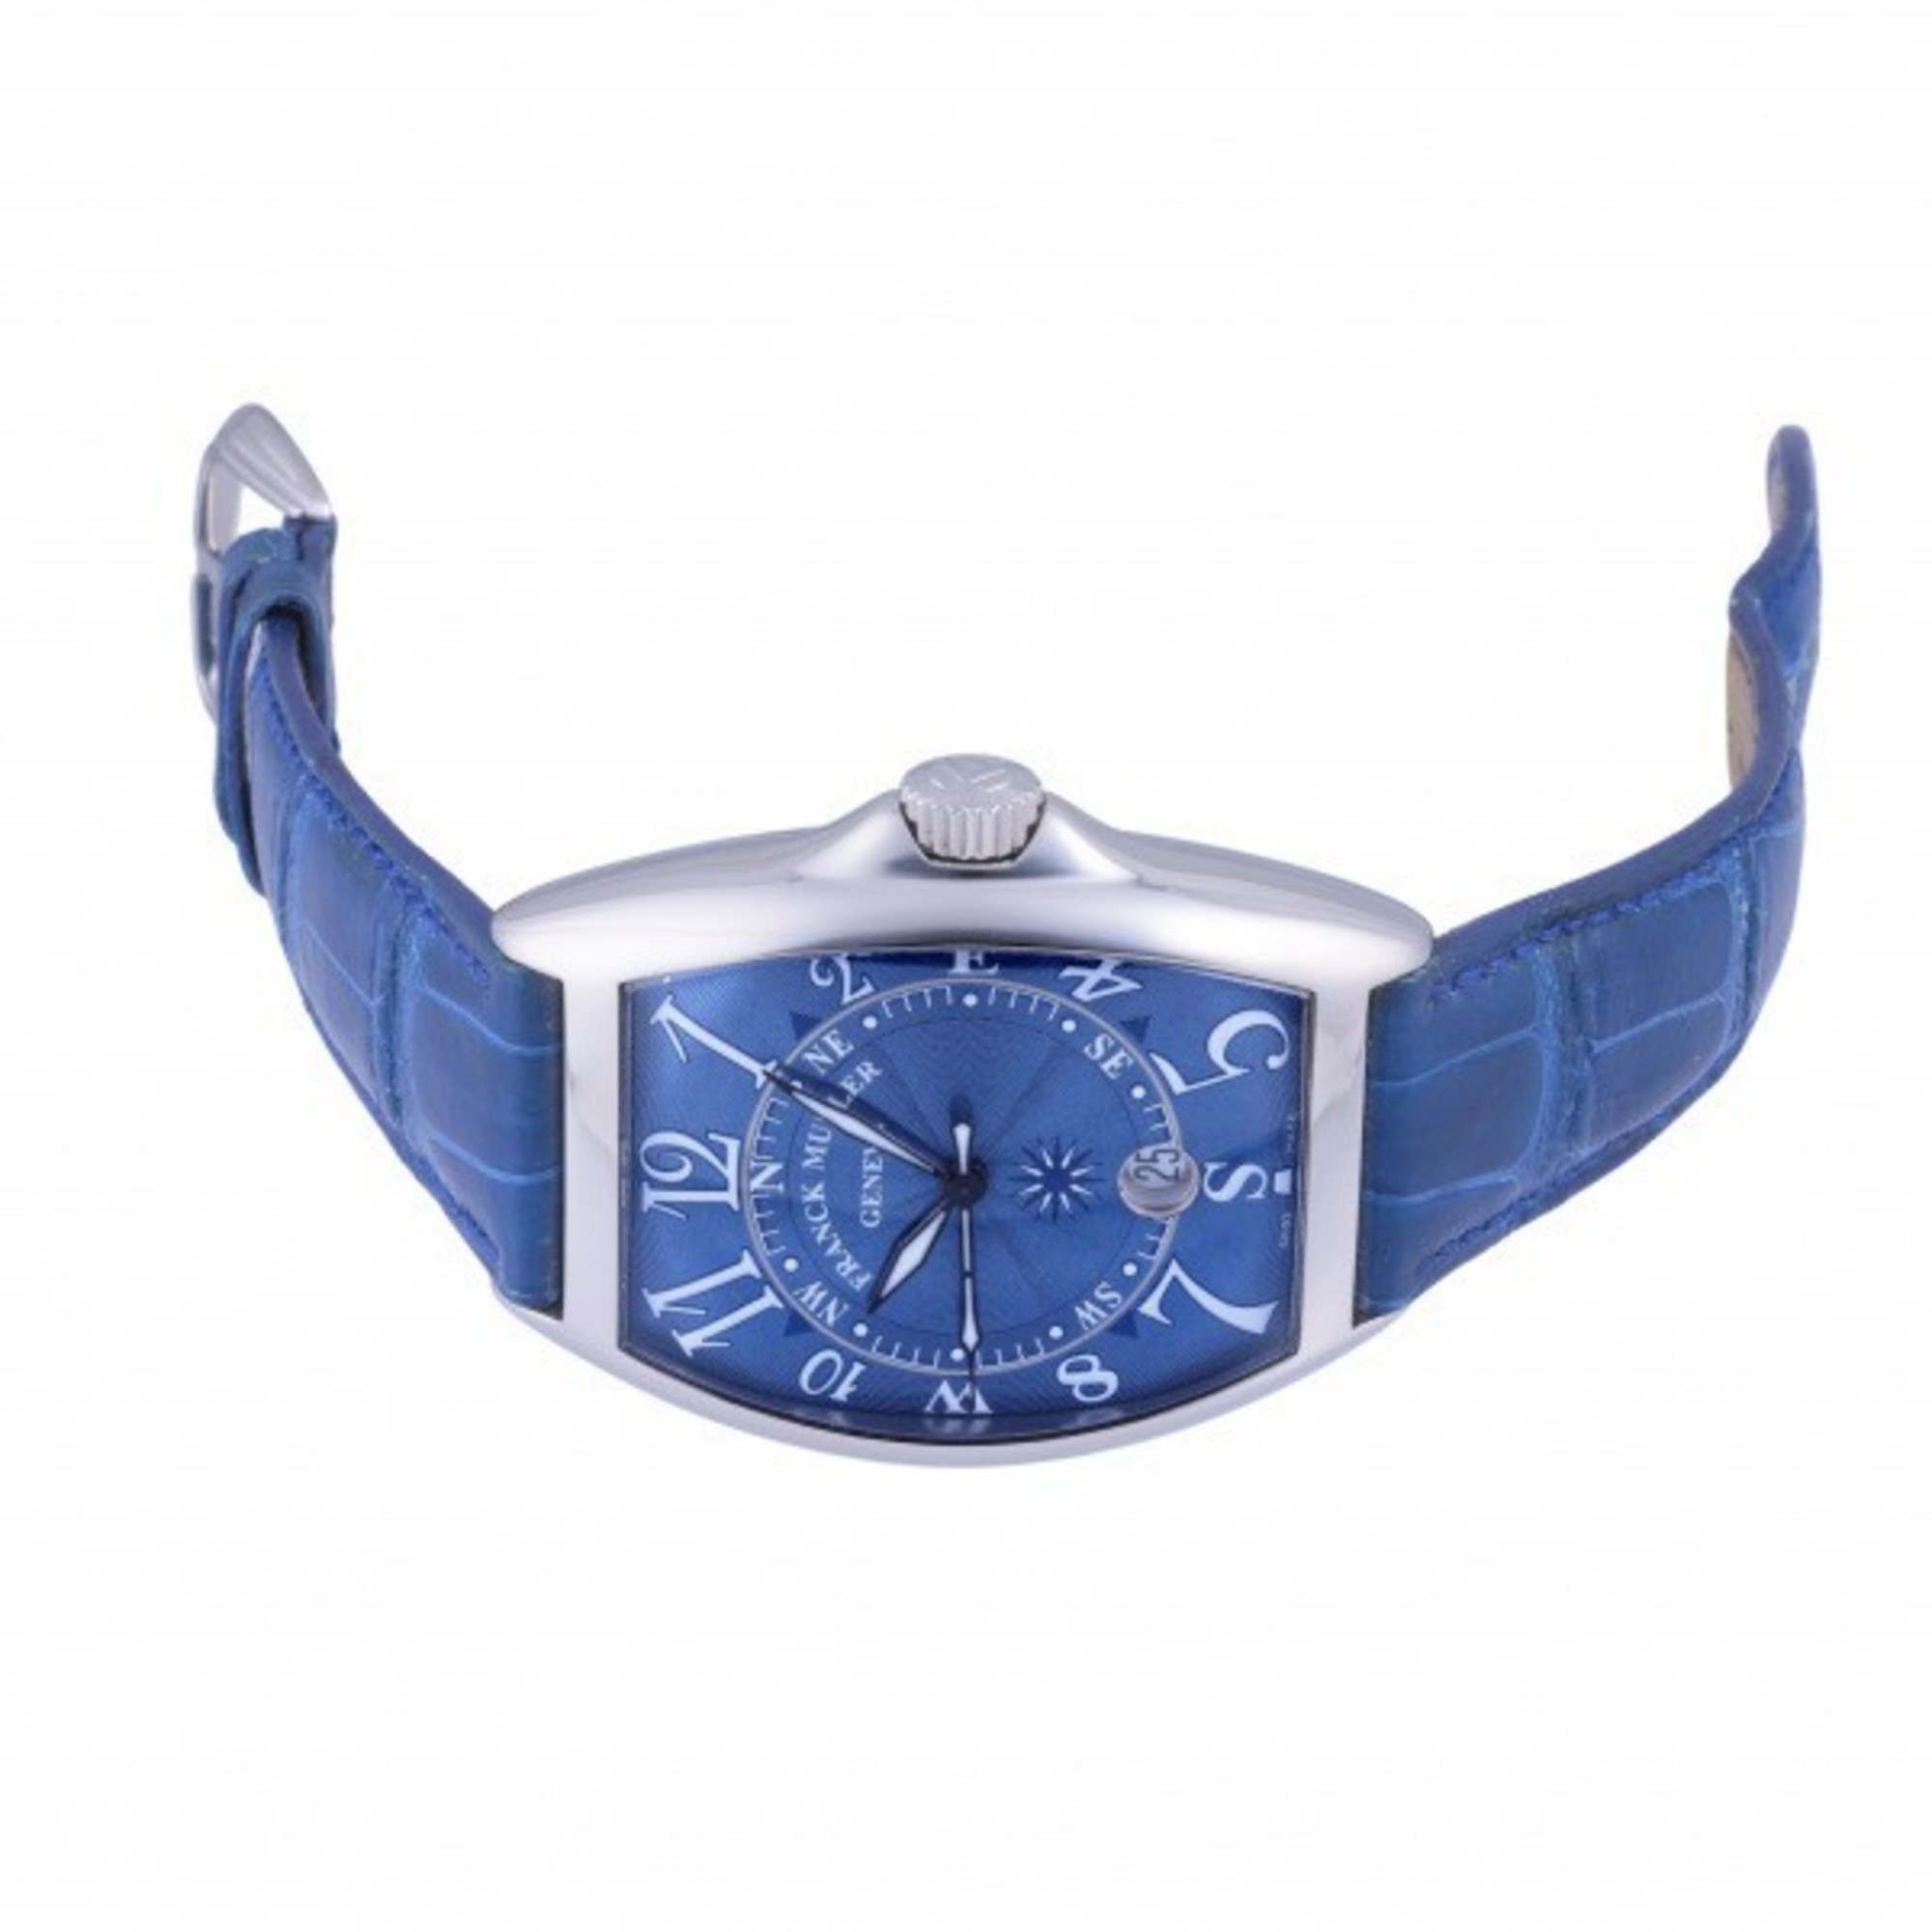 Frank Muller FRANCK MULLER tonneau curvex 7080SCDTMARAC blue dial watch men's